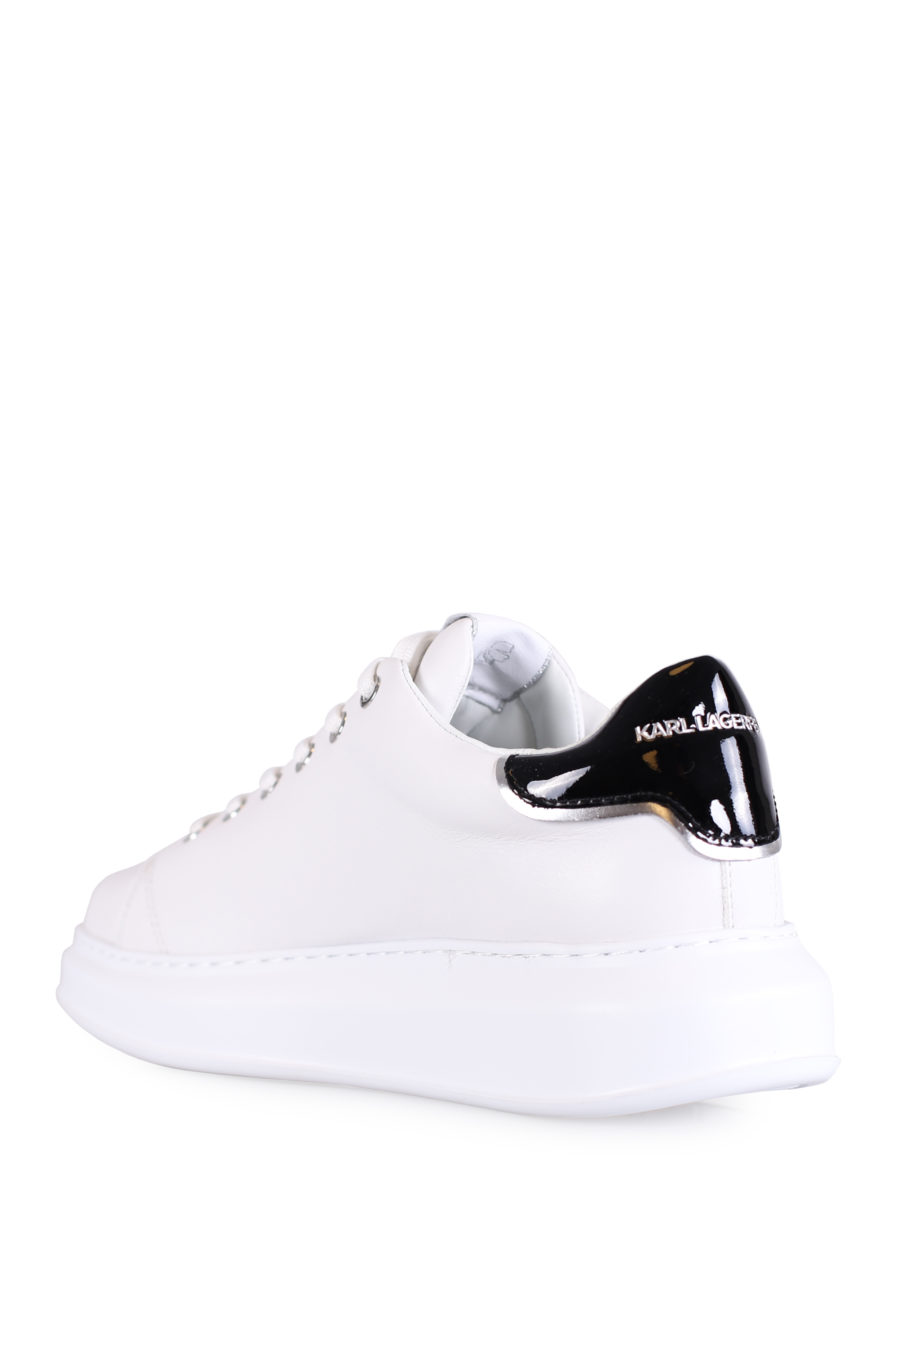 Zapatillas blancas con logotipo "Maison" plateado - IMG 0760